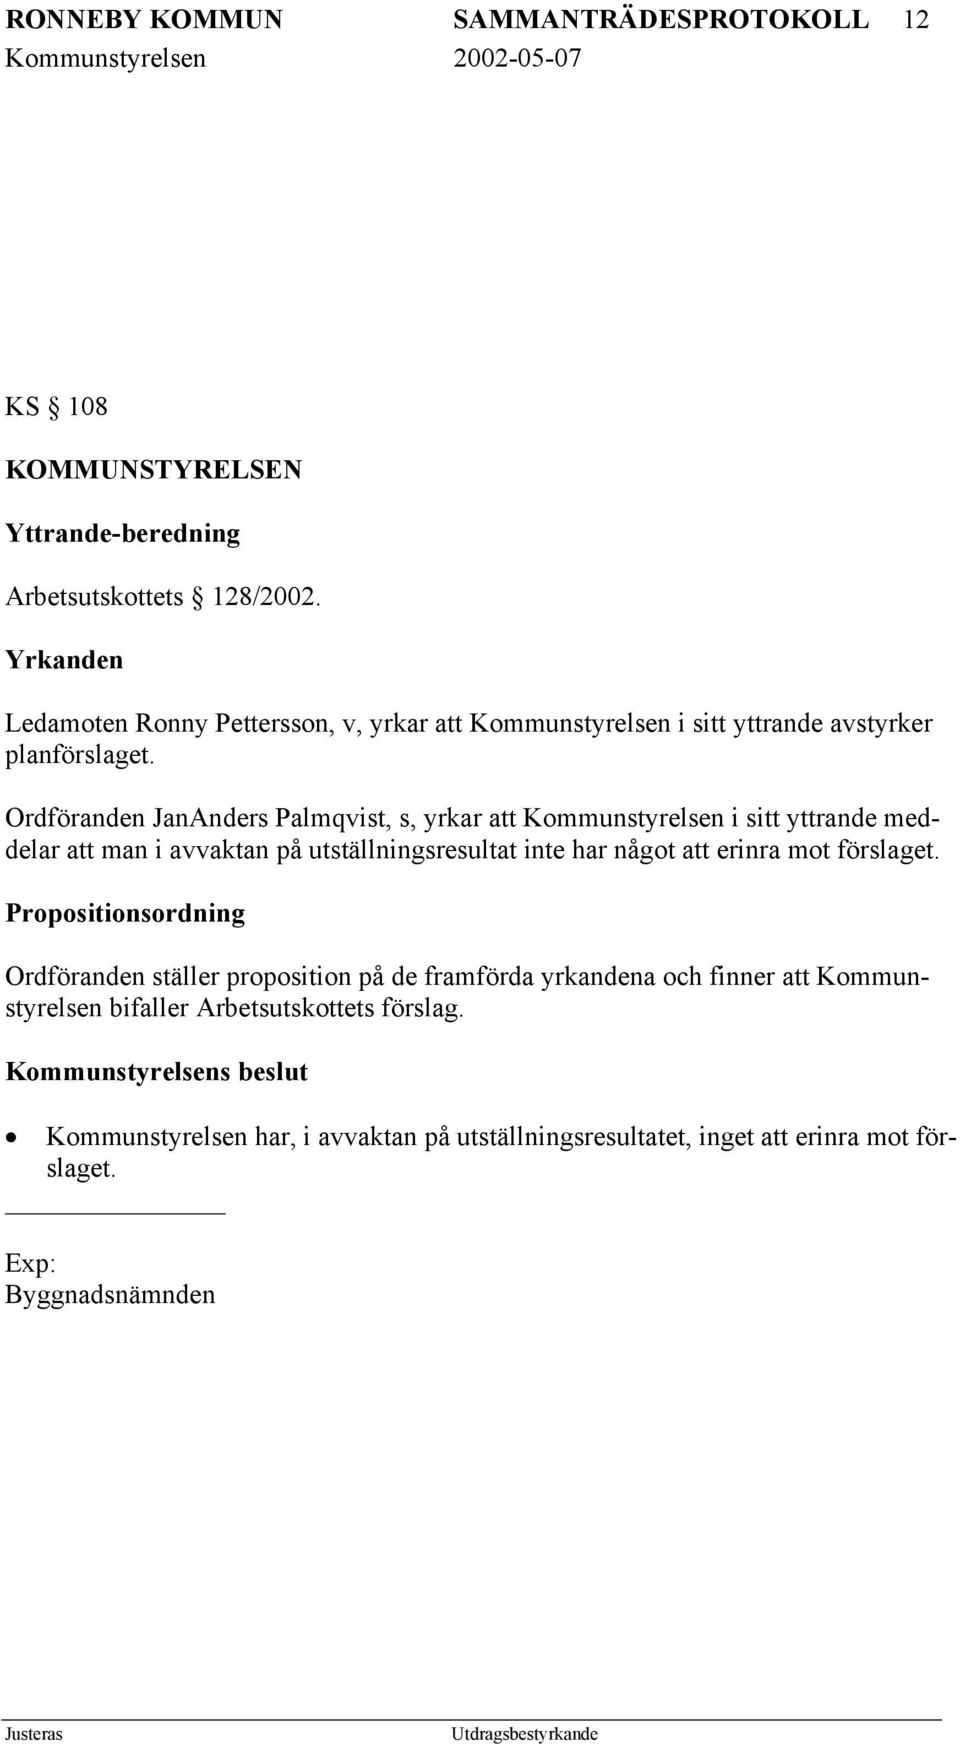 Ordföranden JanAnders Palmqvist, s, yrkar att Kommunstyrelsen i sitt yttrande meddelar att man i avvaktan på utställningsresultat inte har något att erinra mot